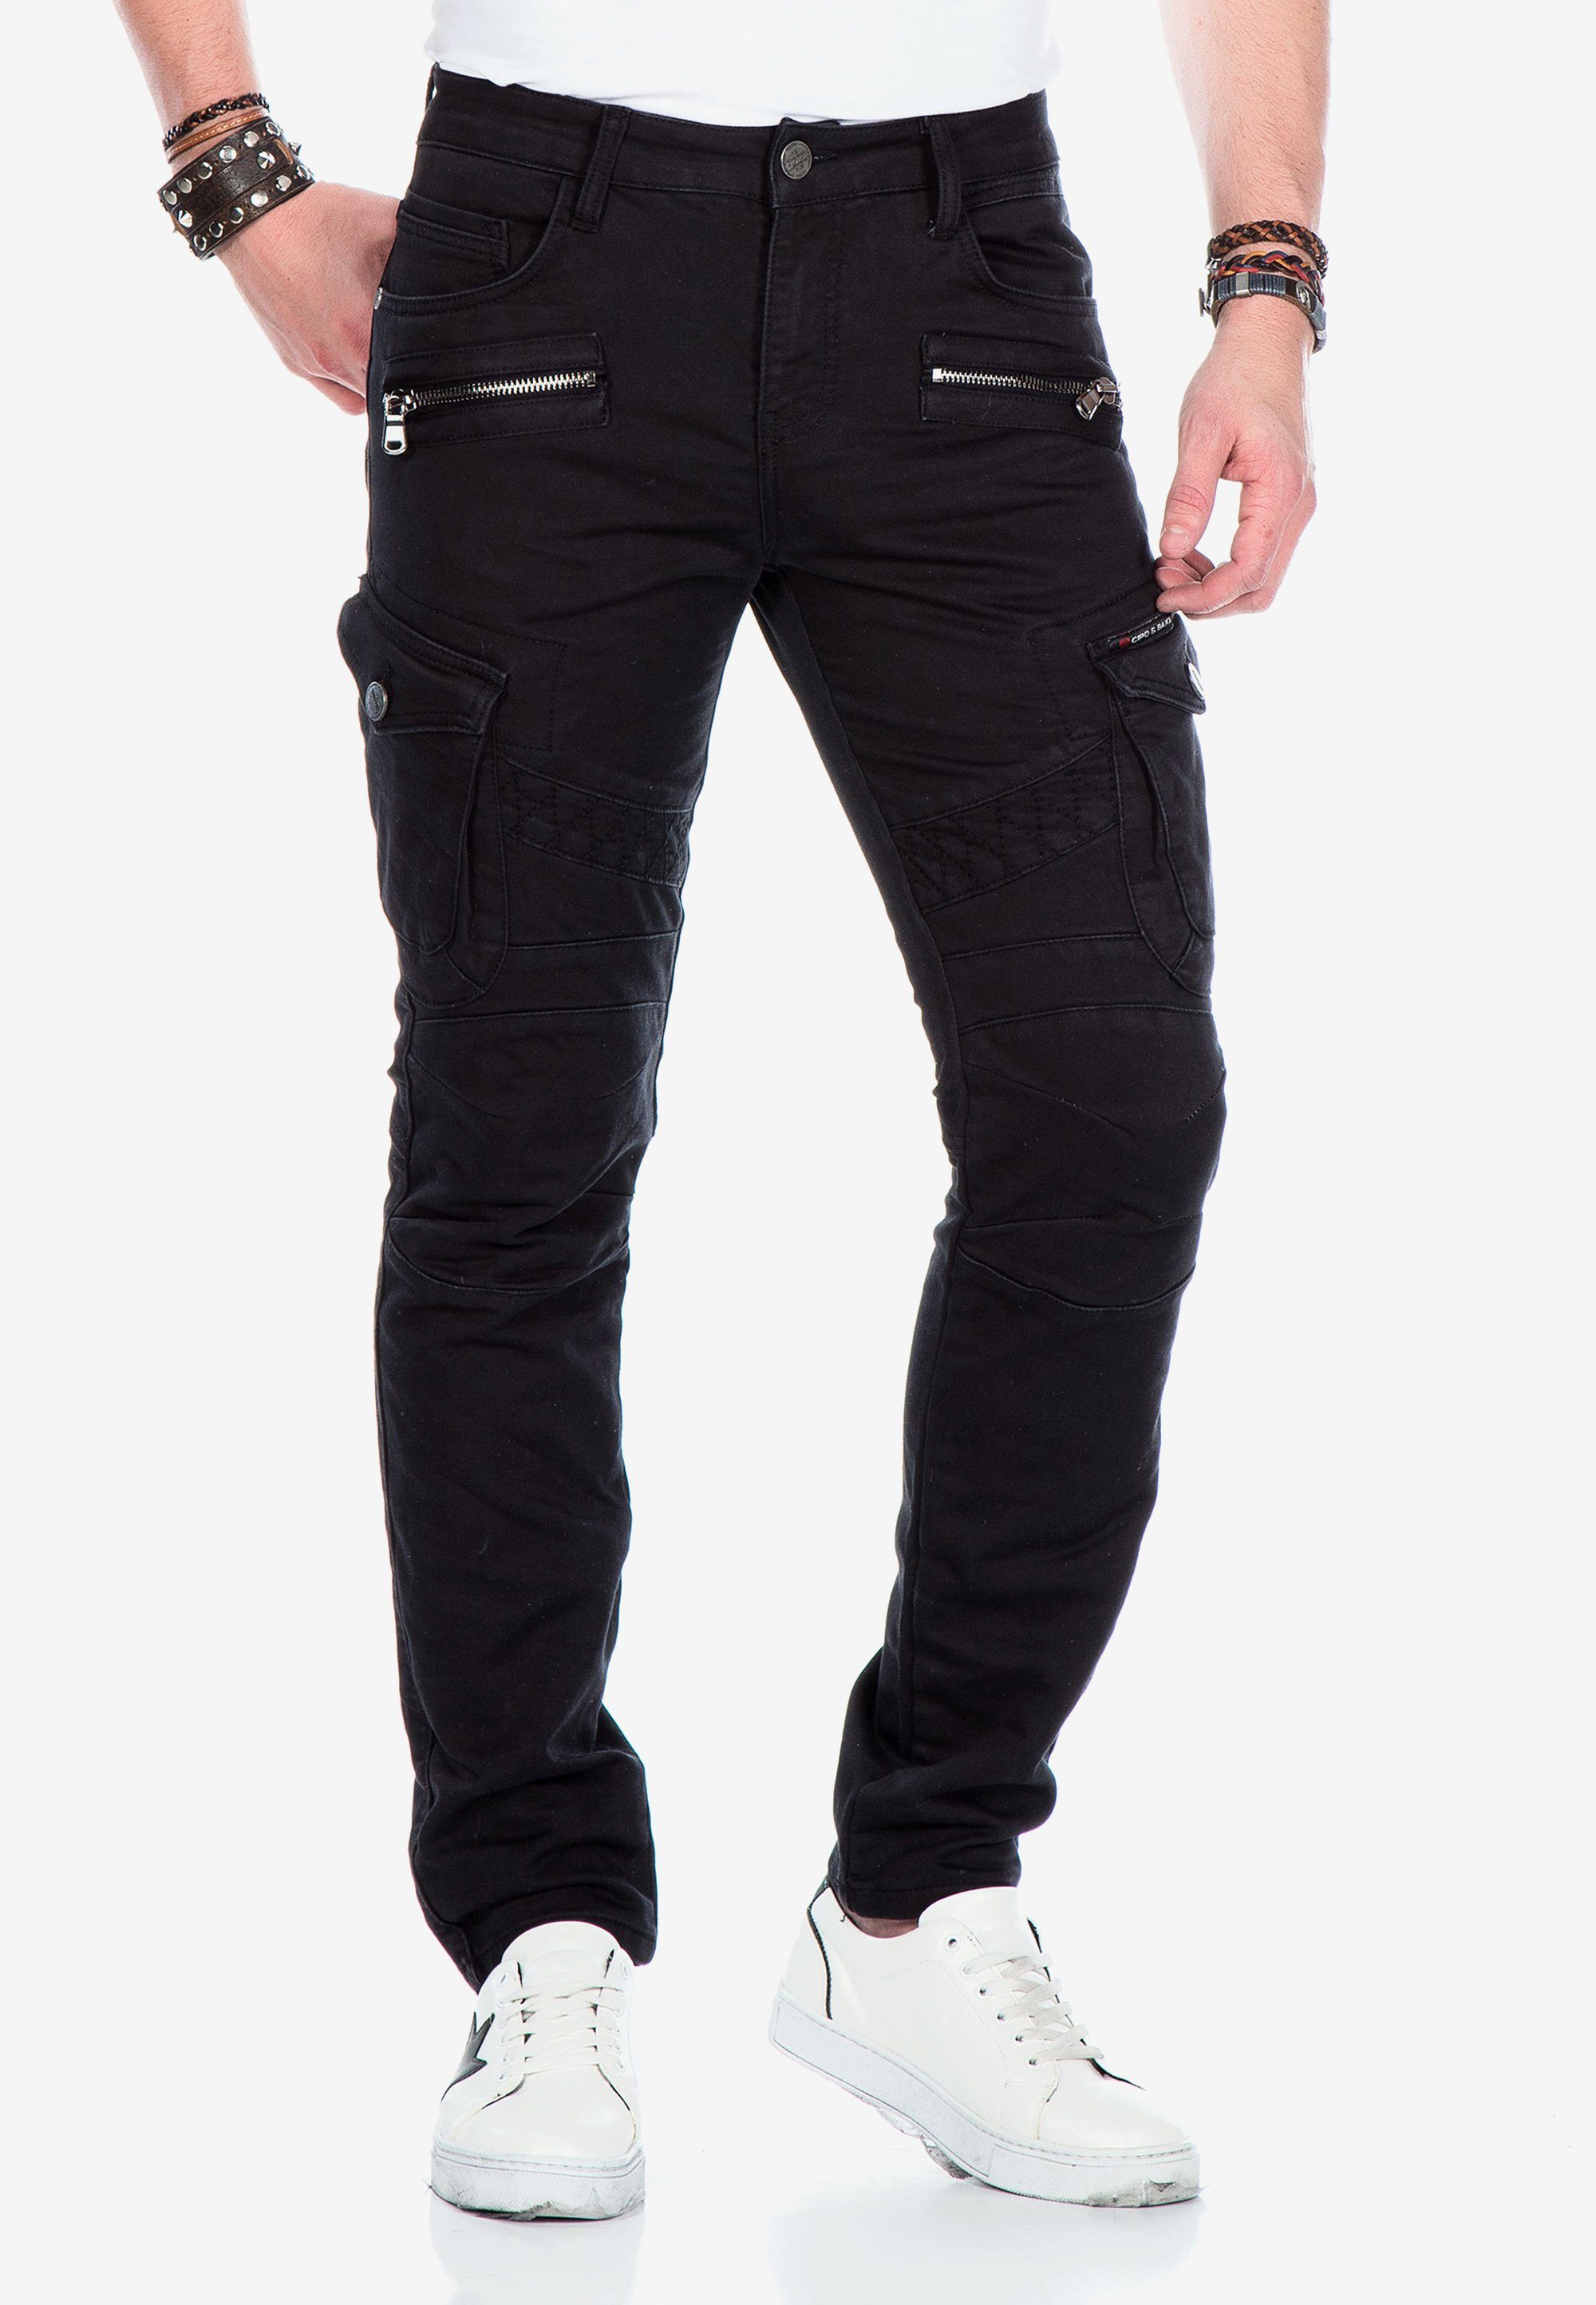 Cipo & Baxx Bequeme im Jeans Biker-Stil schwarz angesagten